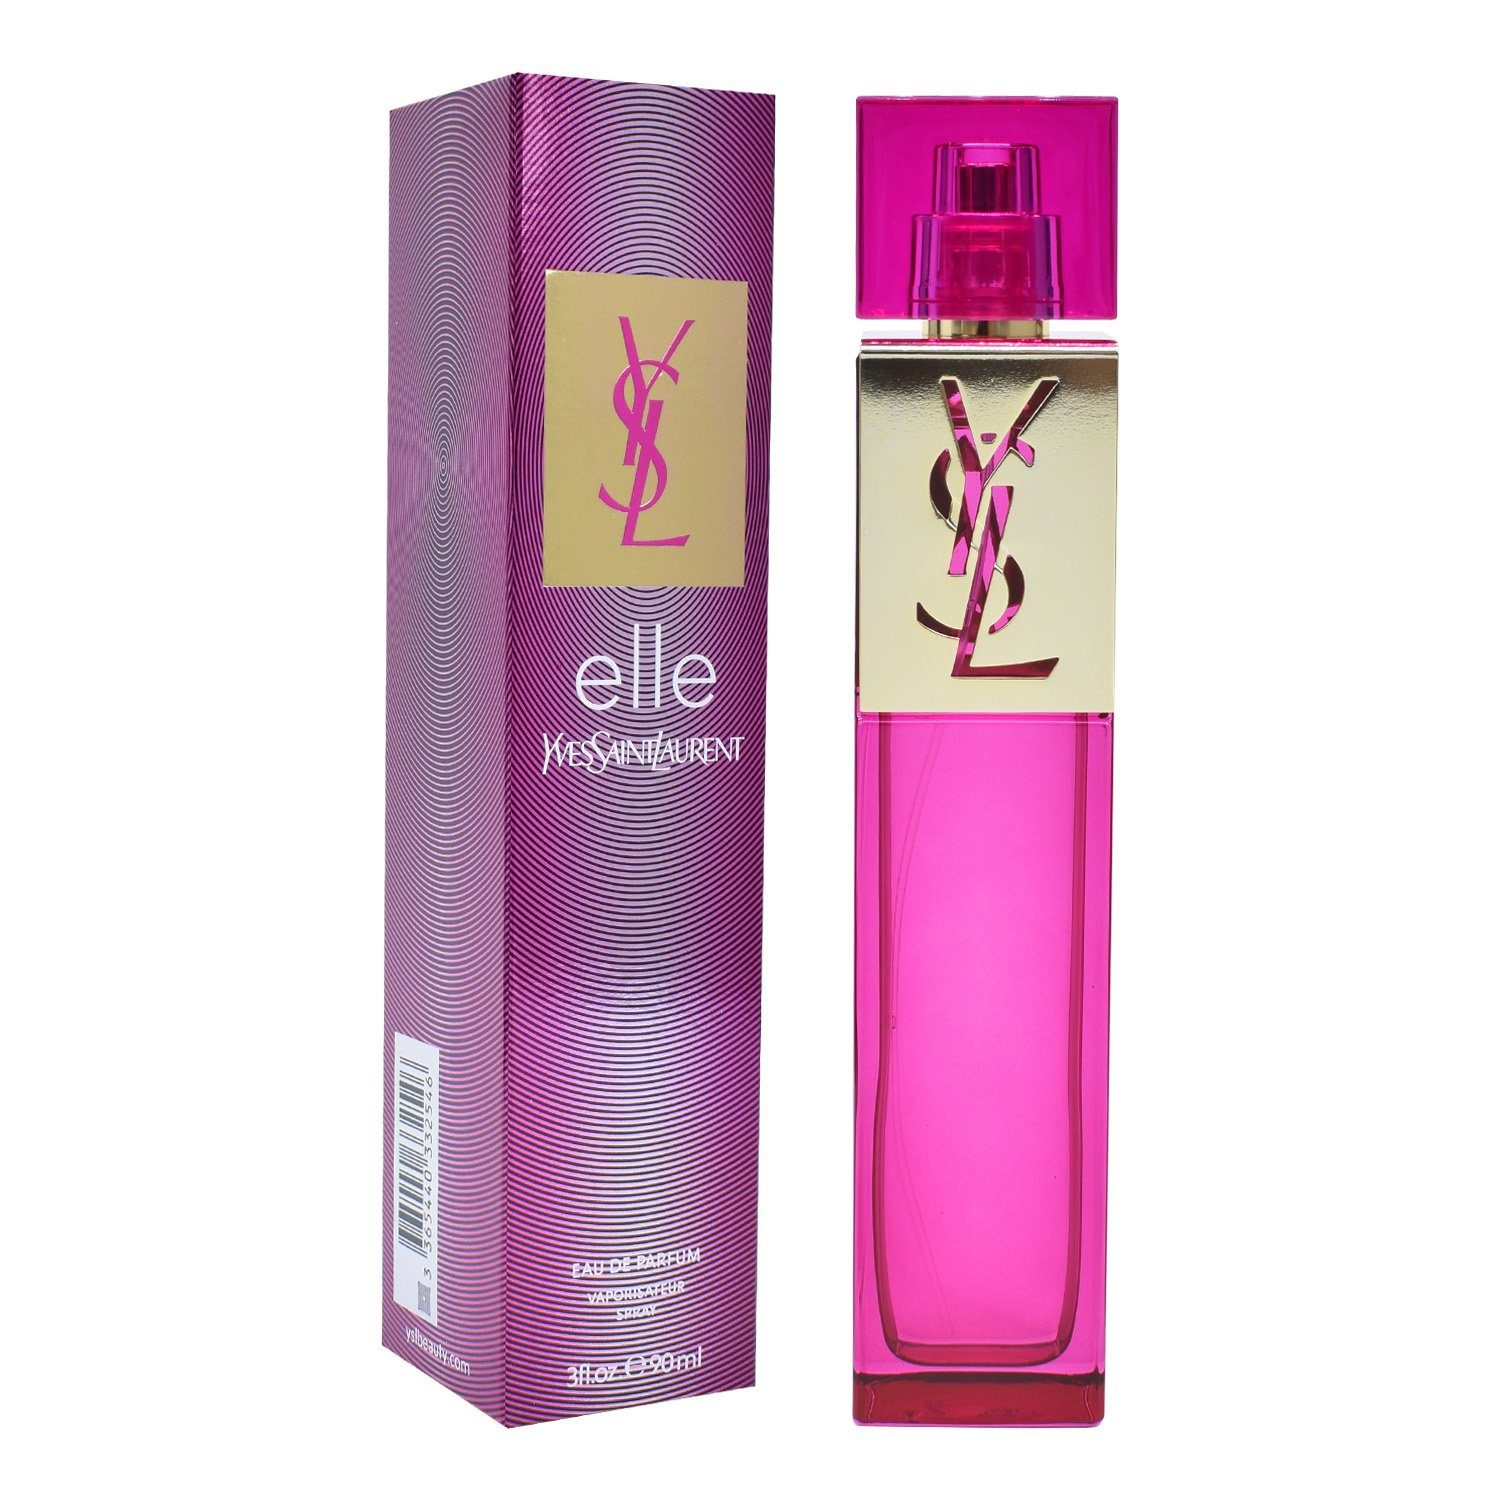 YVES SAINT LAURENT de Parfum 90 ml Eau "Elle"